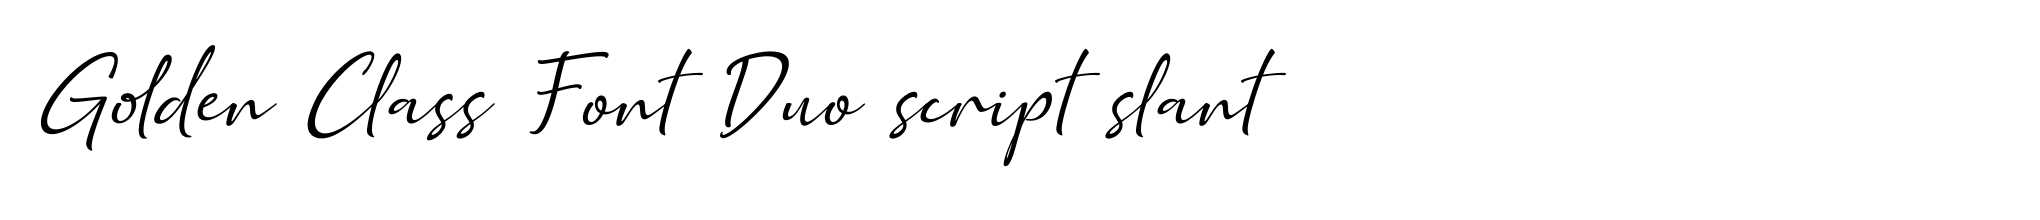 Golden Class Font Duo script slant image